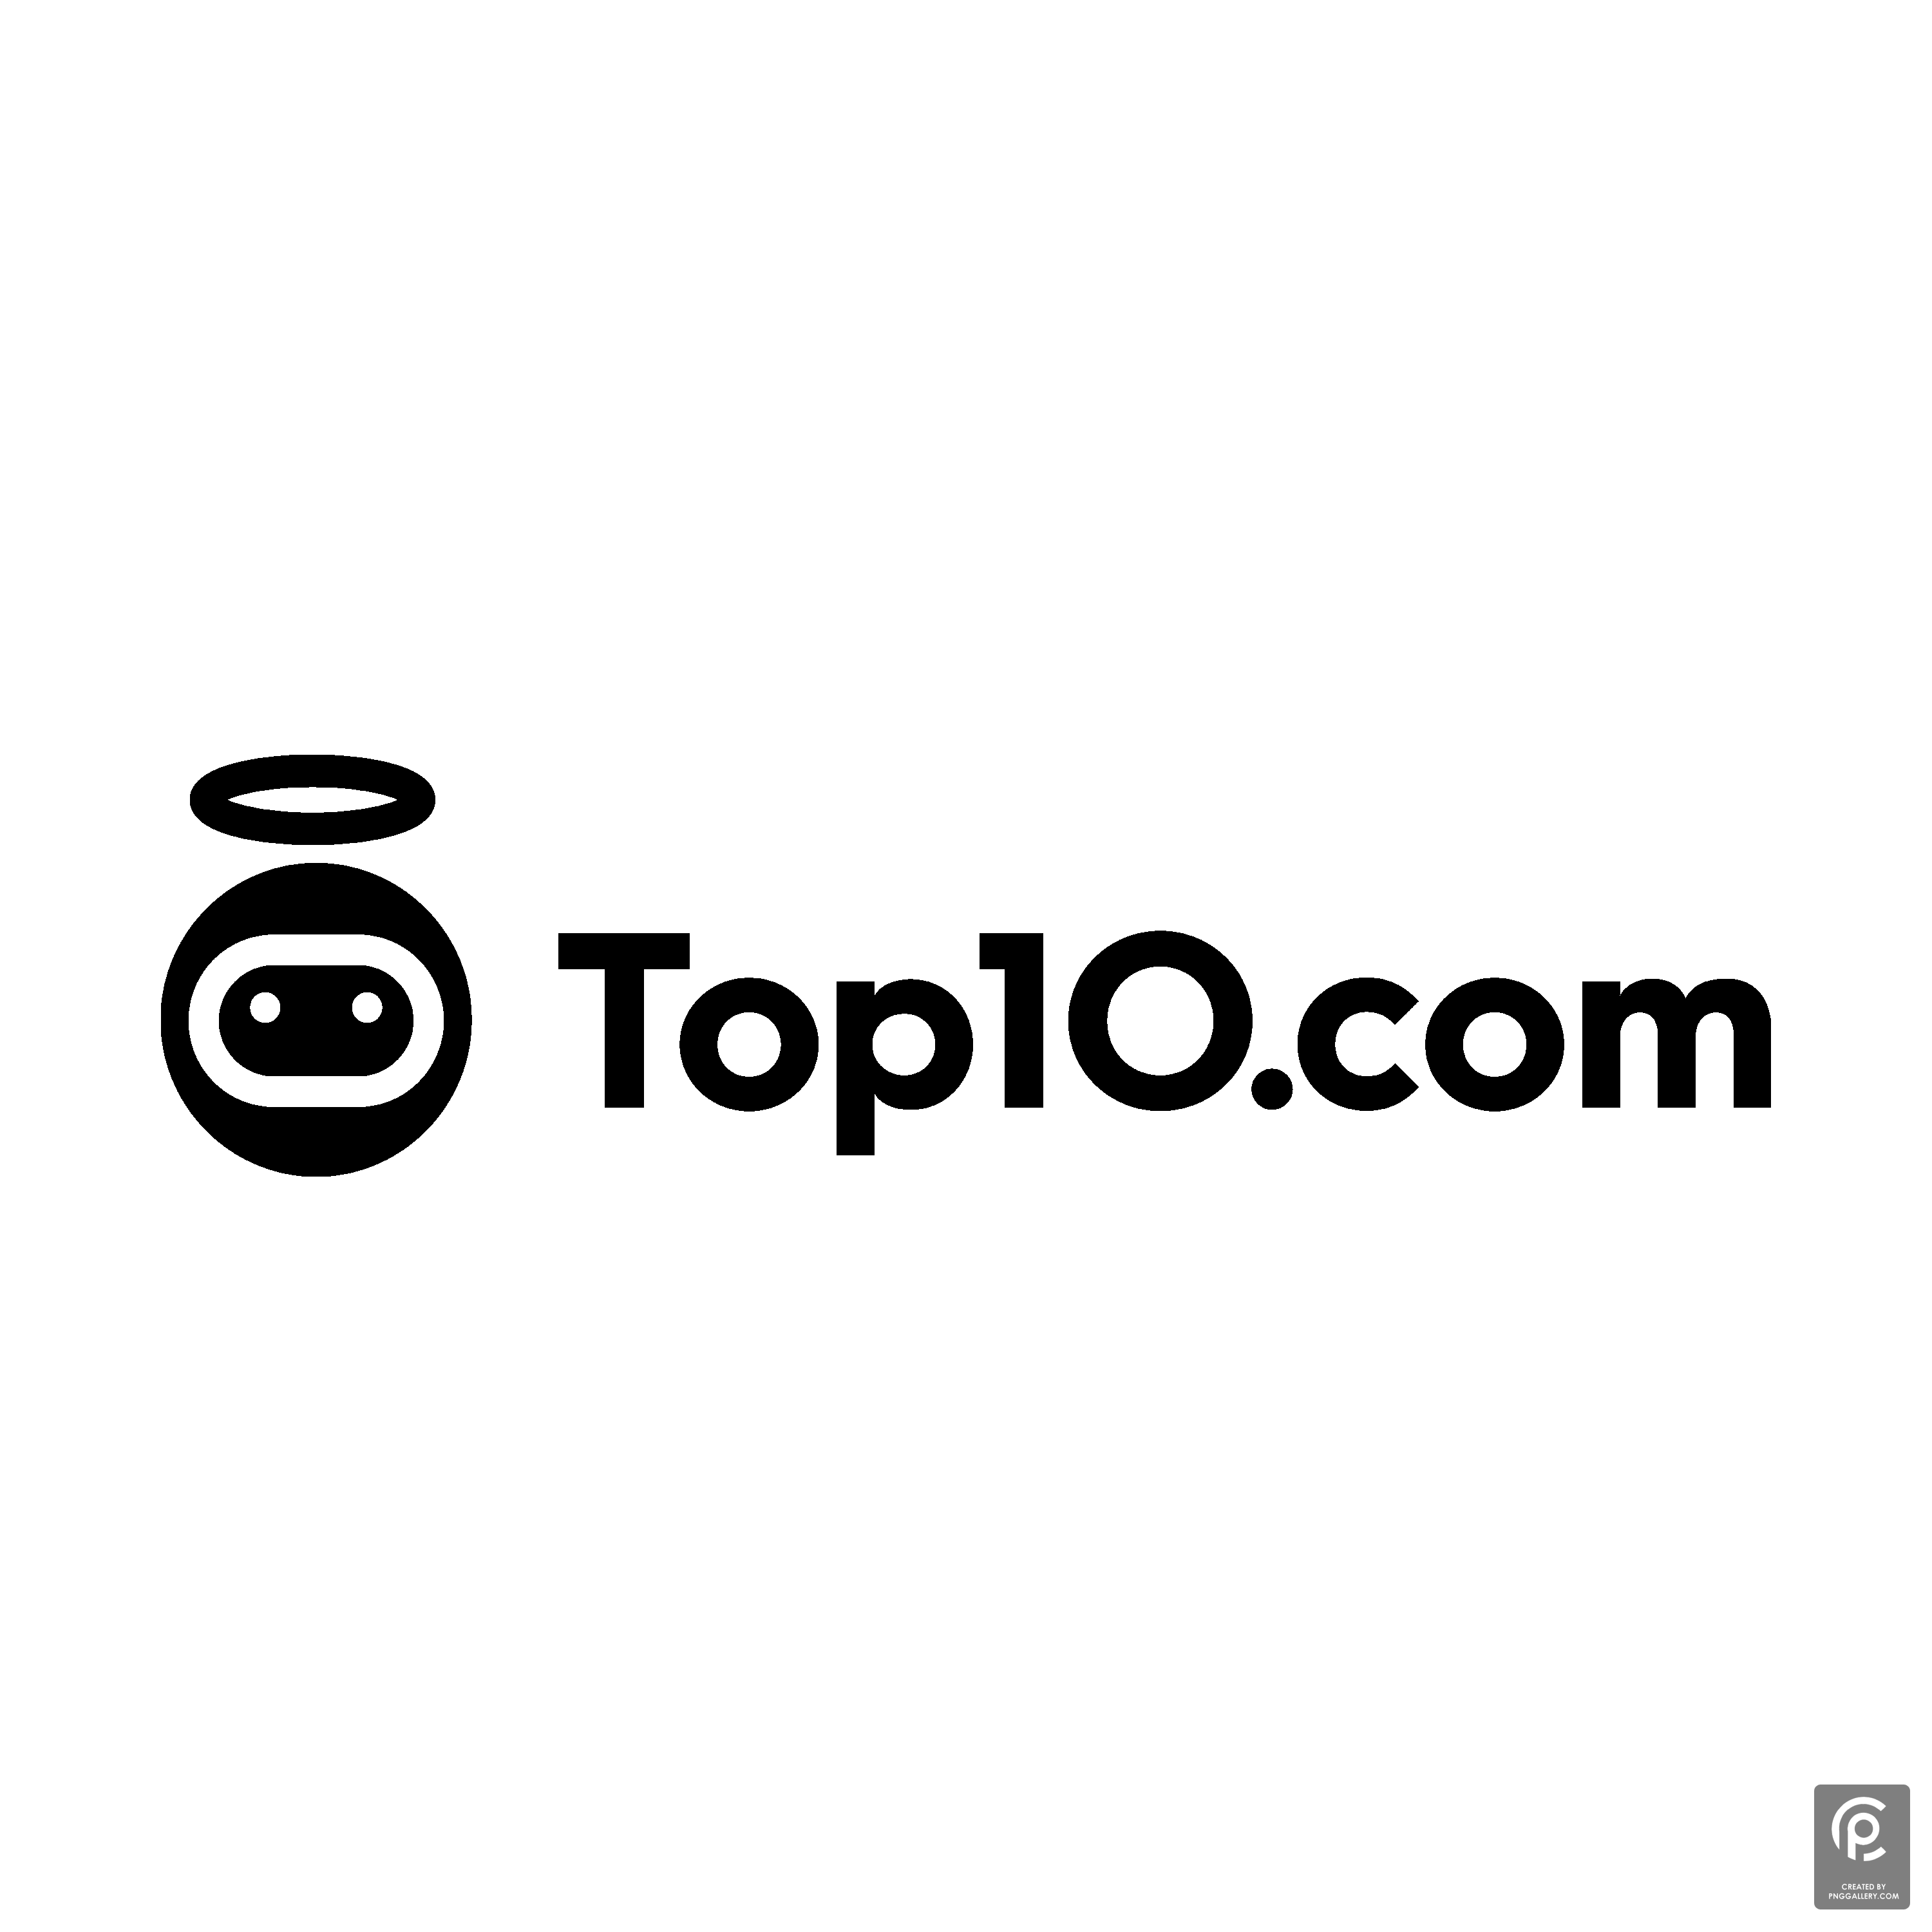 Top10.com Logo Transparent Gallery